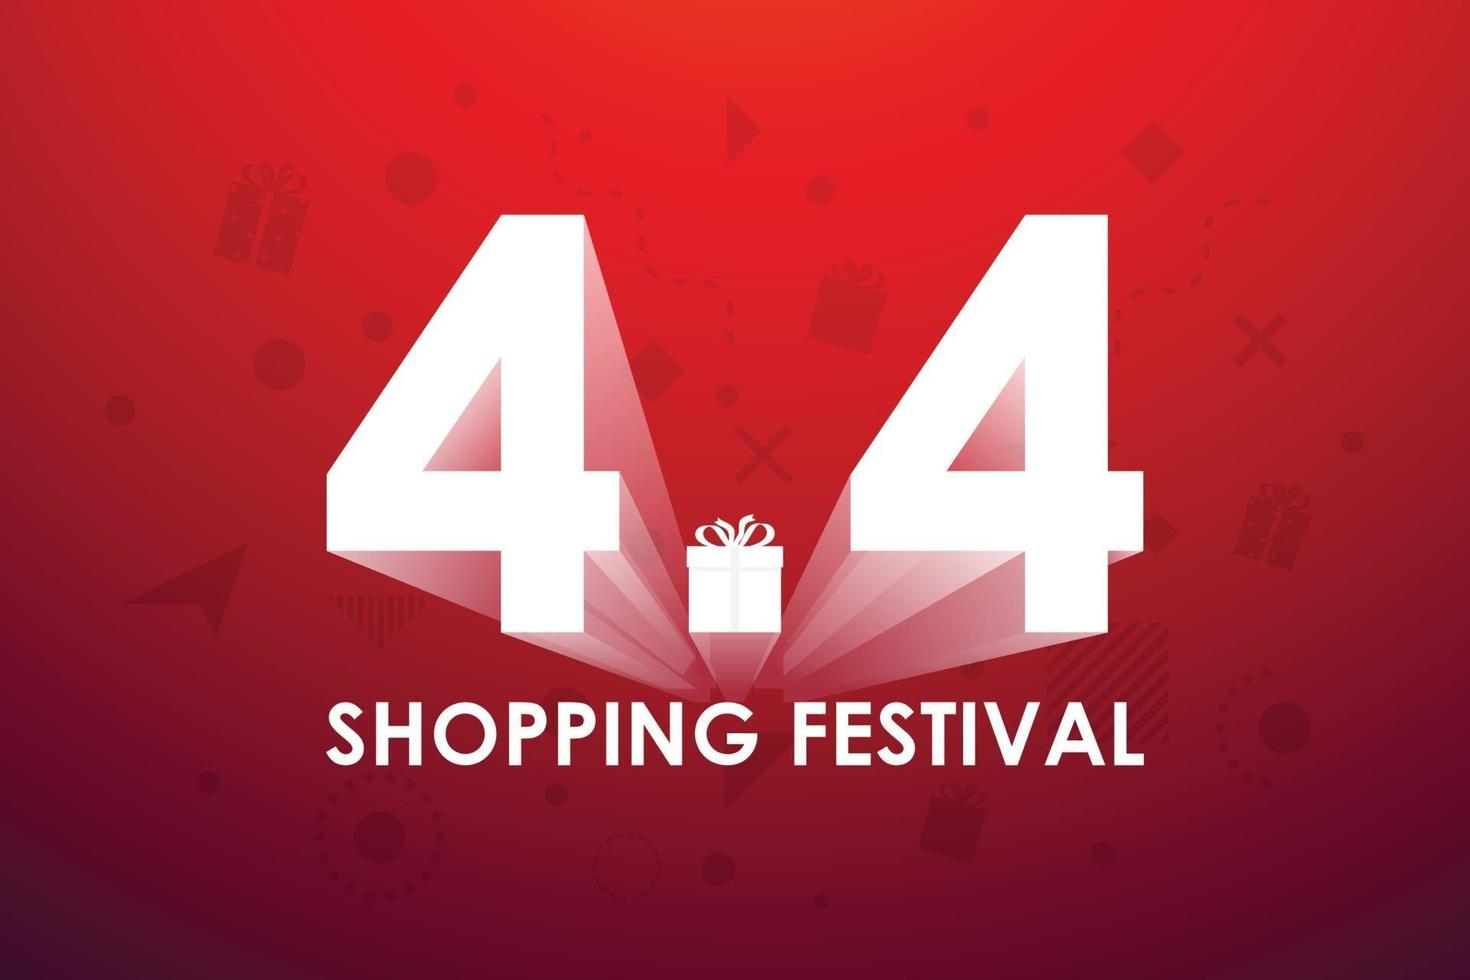 4.4 Einkaufsfestival, Sprachmarketing-Bannerentwurf auf rotem Hintergrund. Vektorillustration vektor